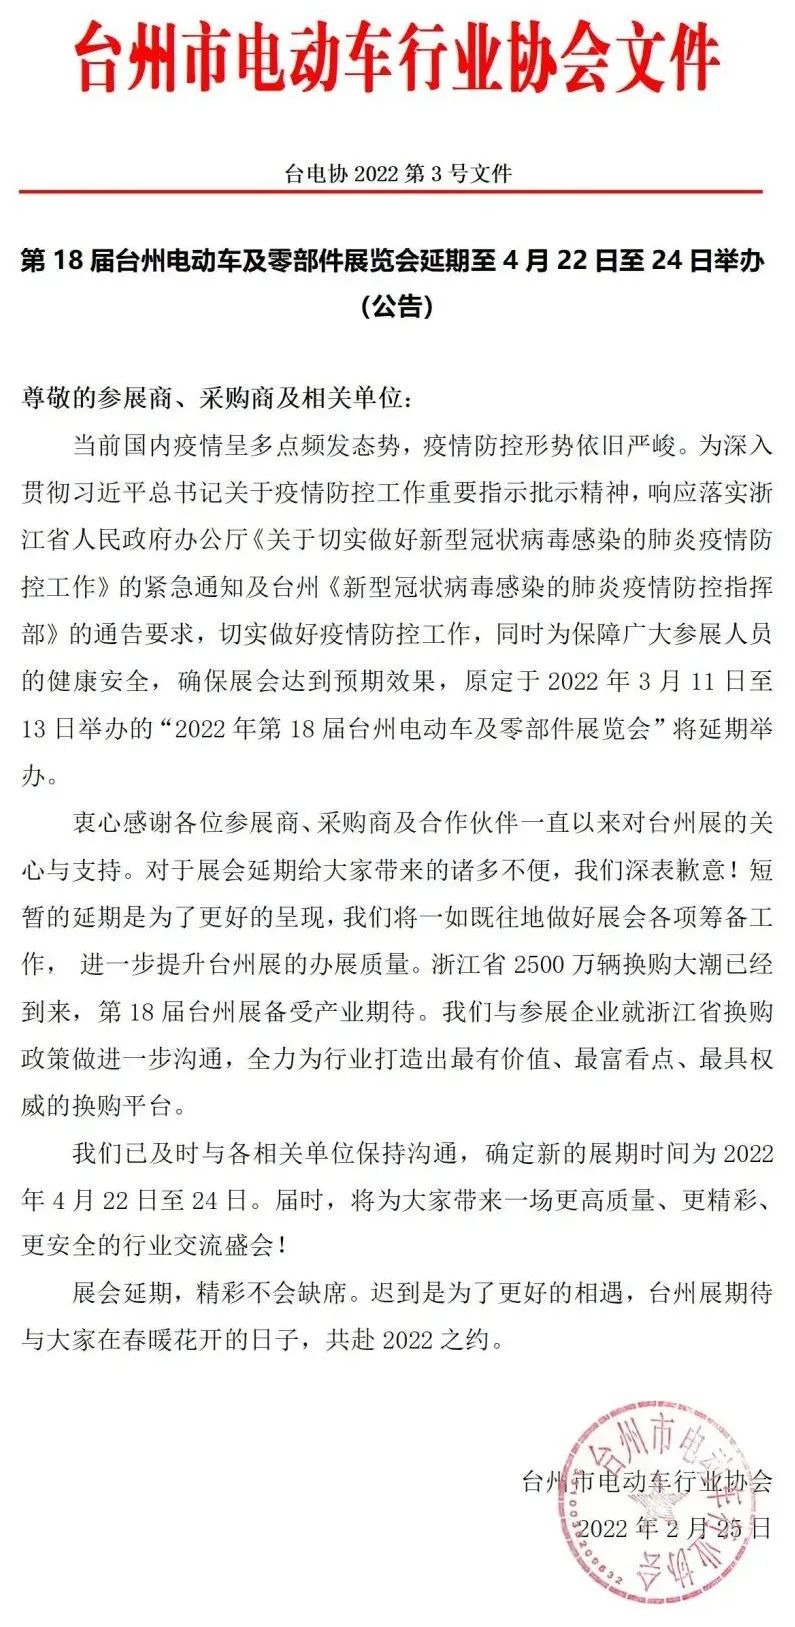 台州电动车及零部件展览会延期